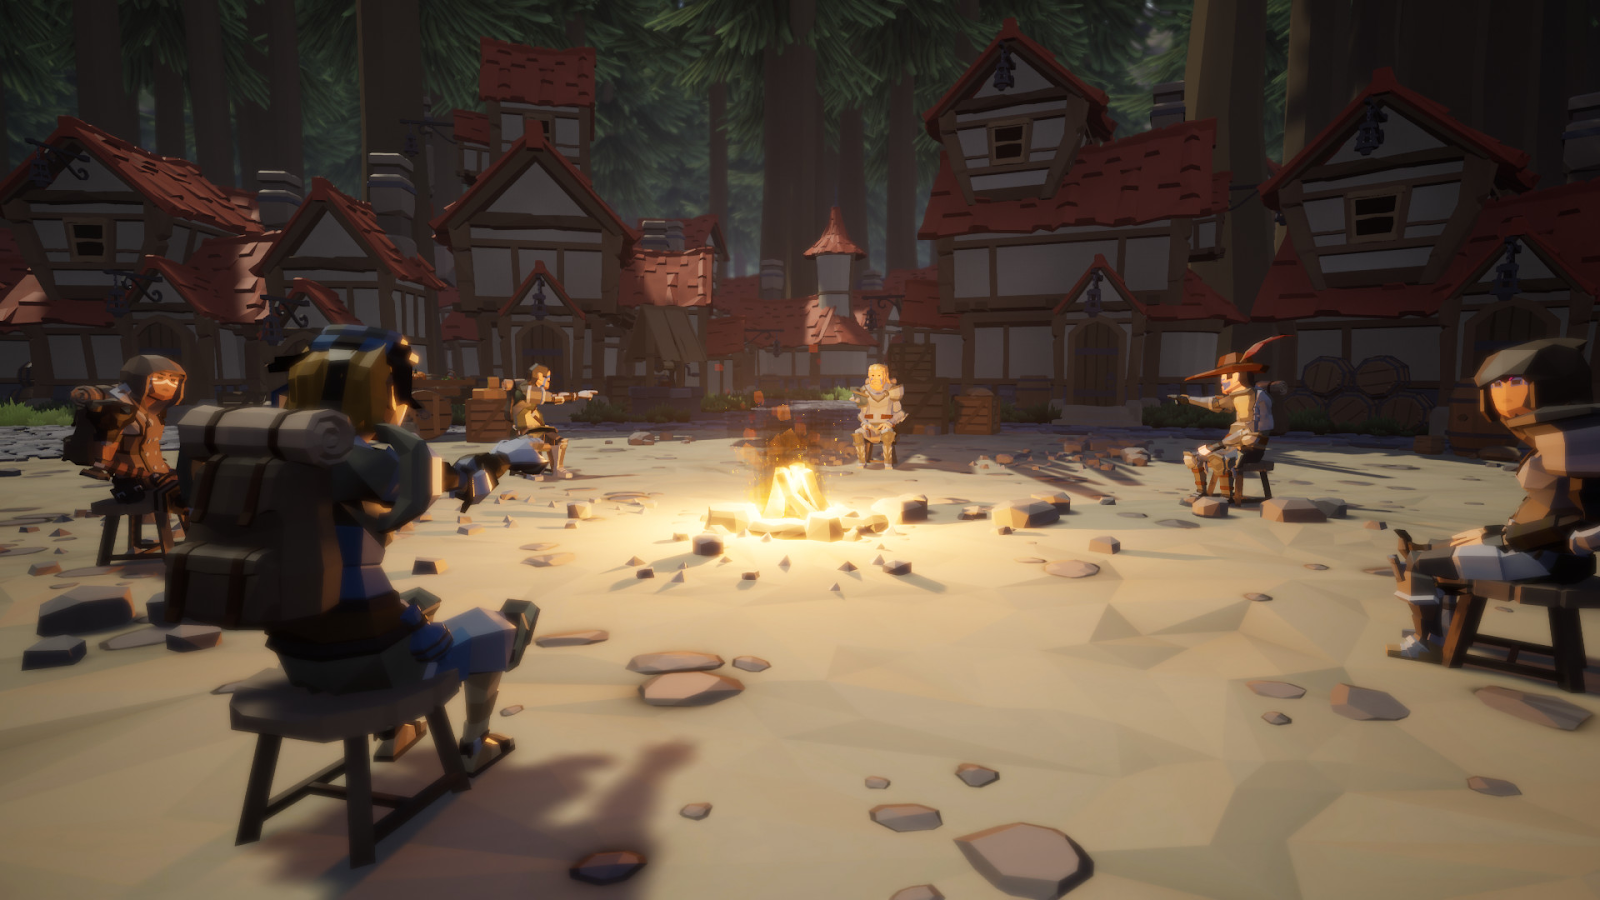 Giao diện mở đầu game ma sói trực tuyến Agrou là hình ảnh một nhóm người đang ngồi quanh đống lửa